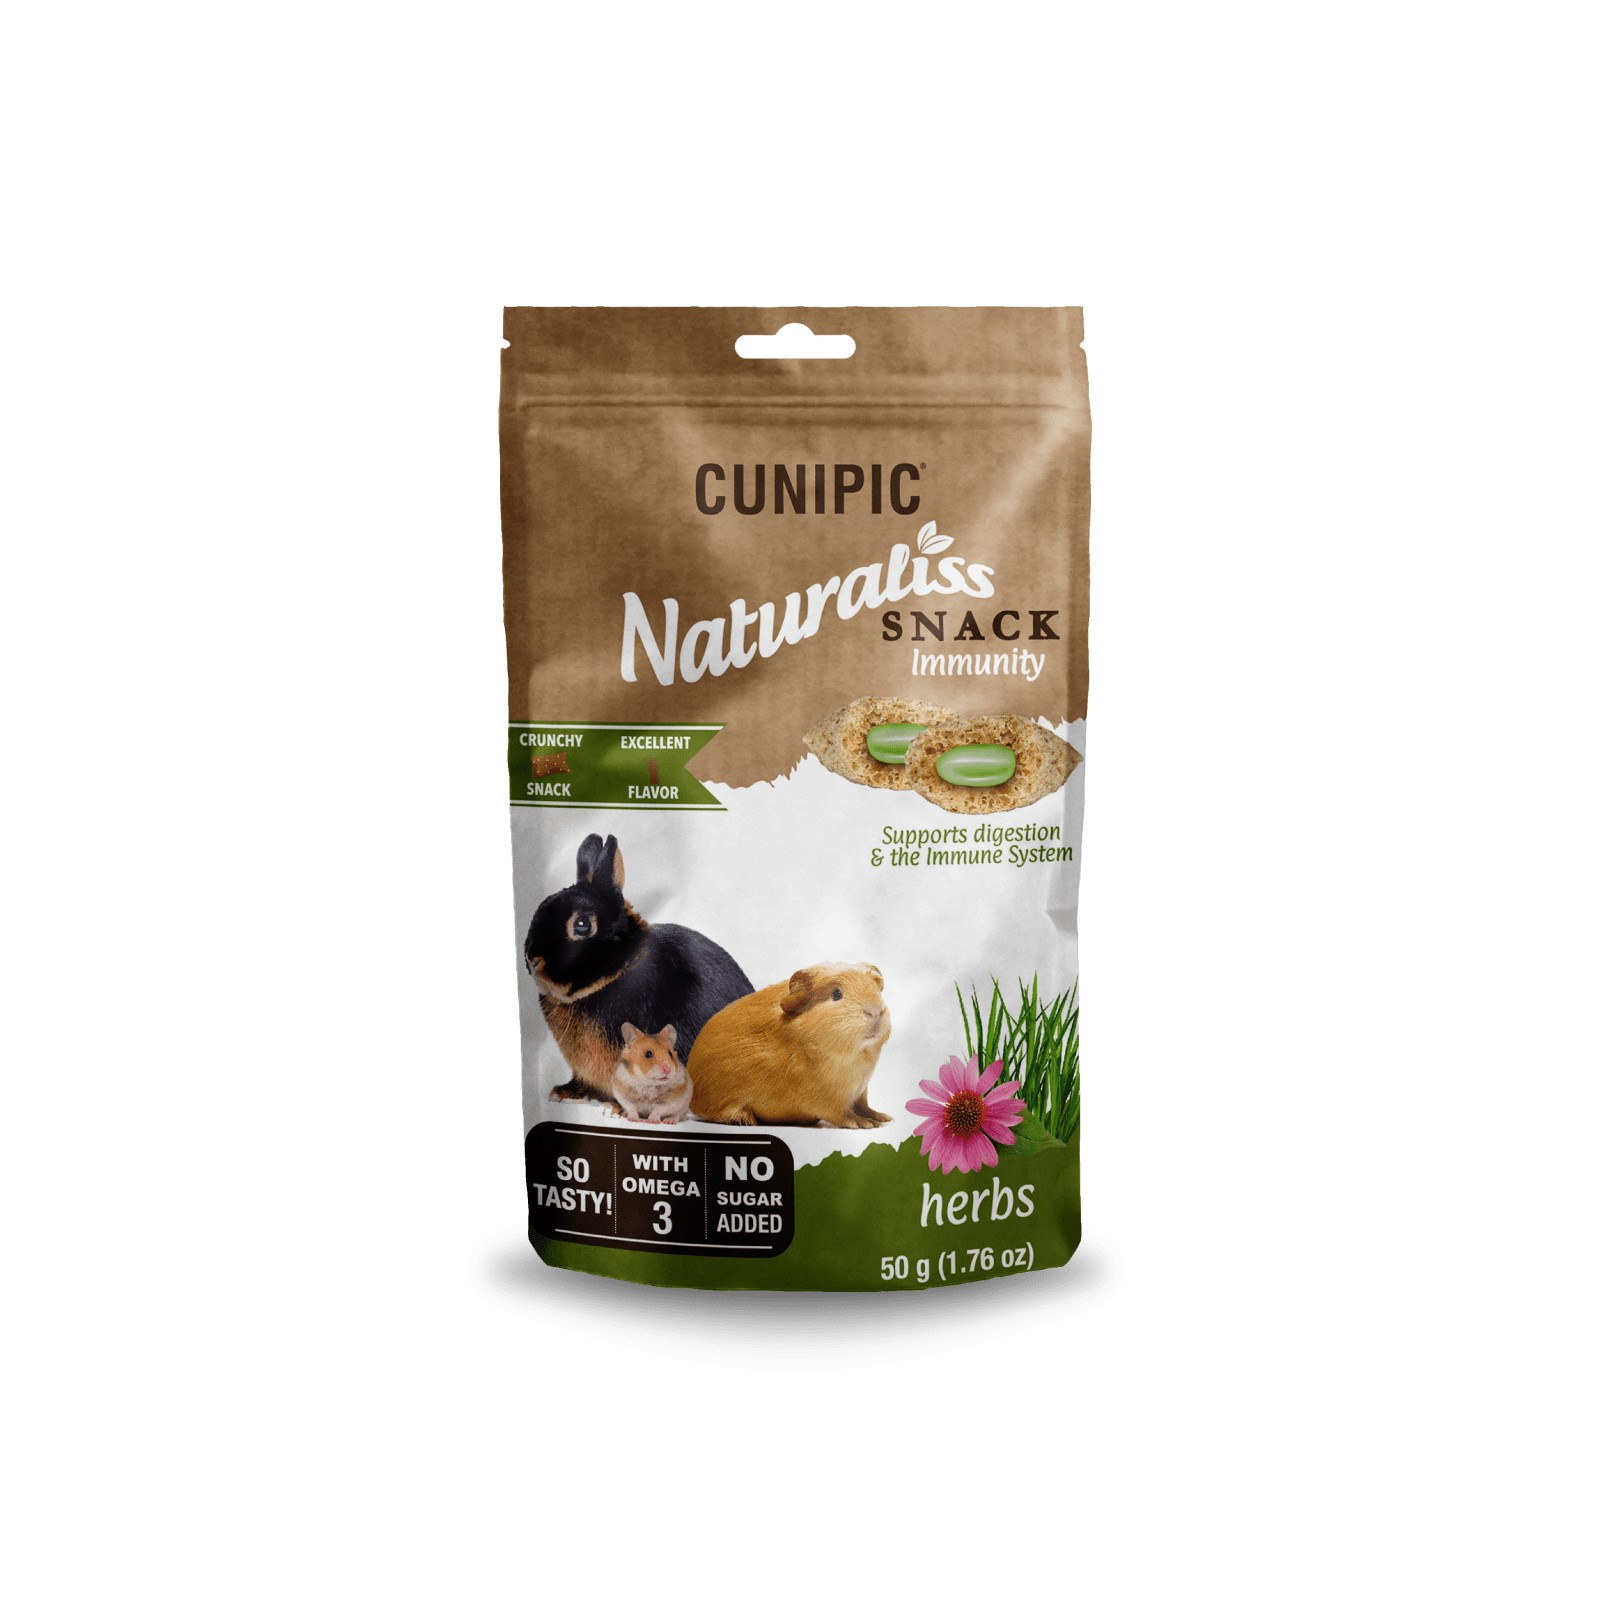 Cunipic Naturaliss Snack Immunity Preis für Kaninchen  